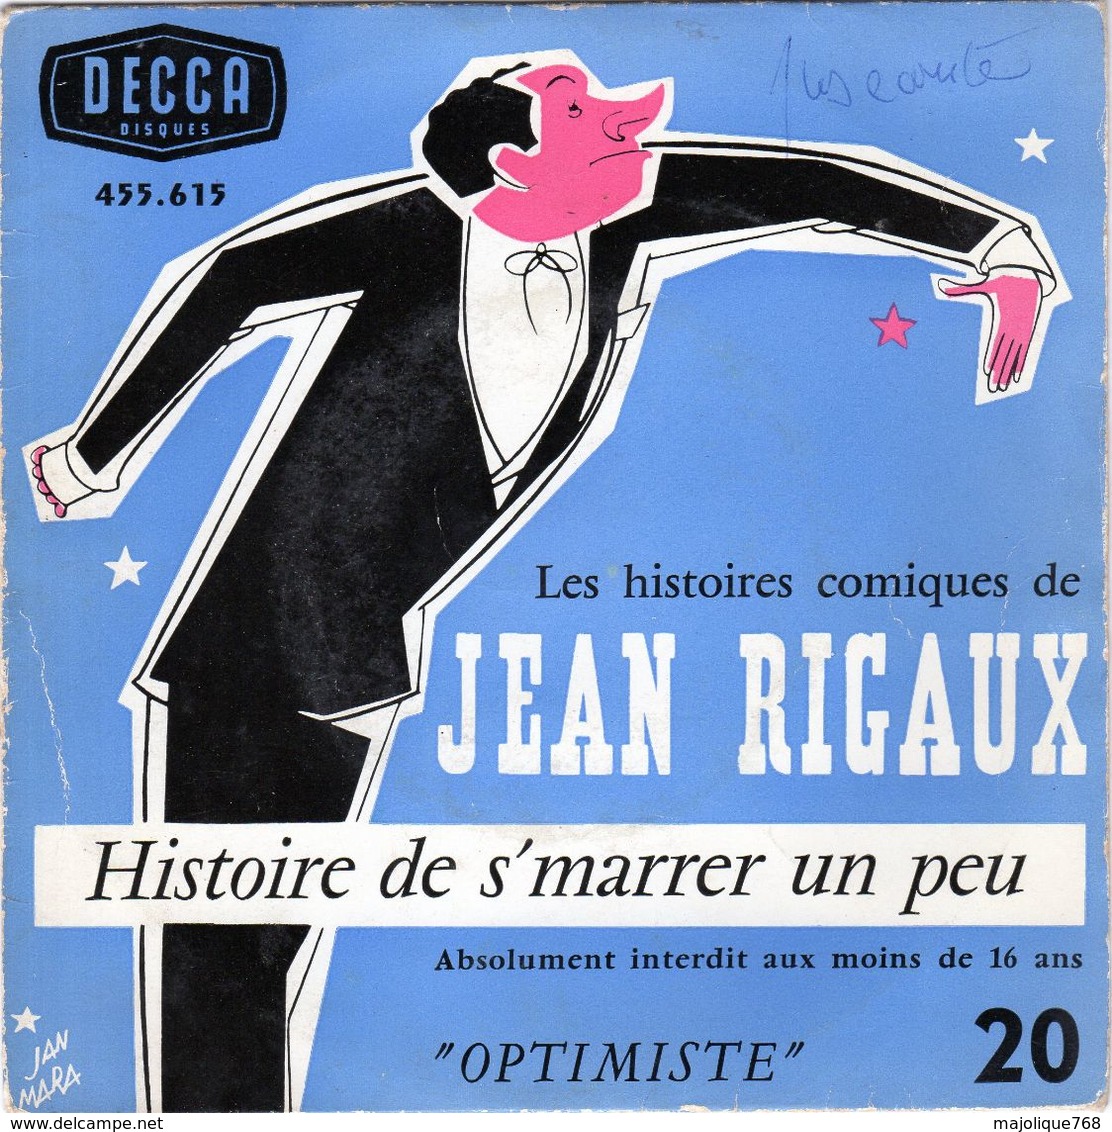 Disque - Jean Rigaux Optimiste N°20 - Histoire De S'marrer Un Peu - DECCA 455.615 - - Comiche